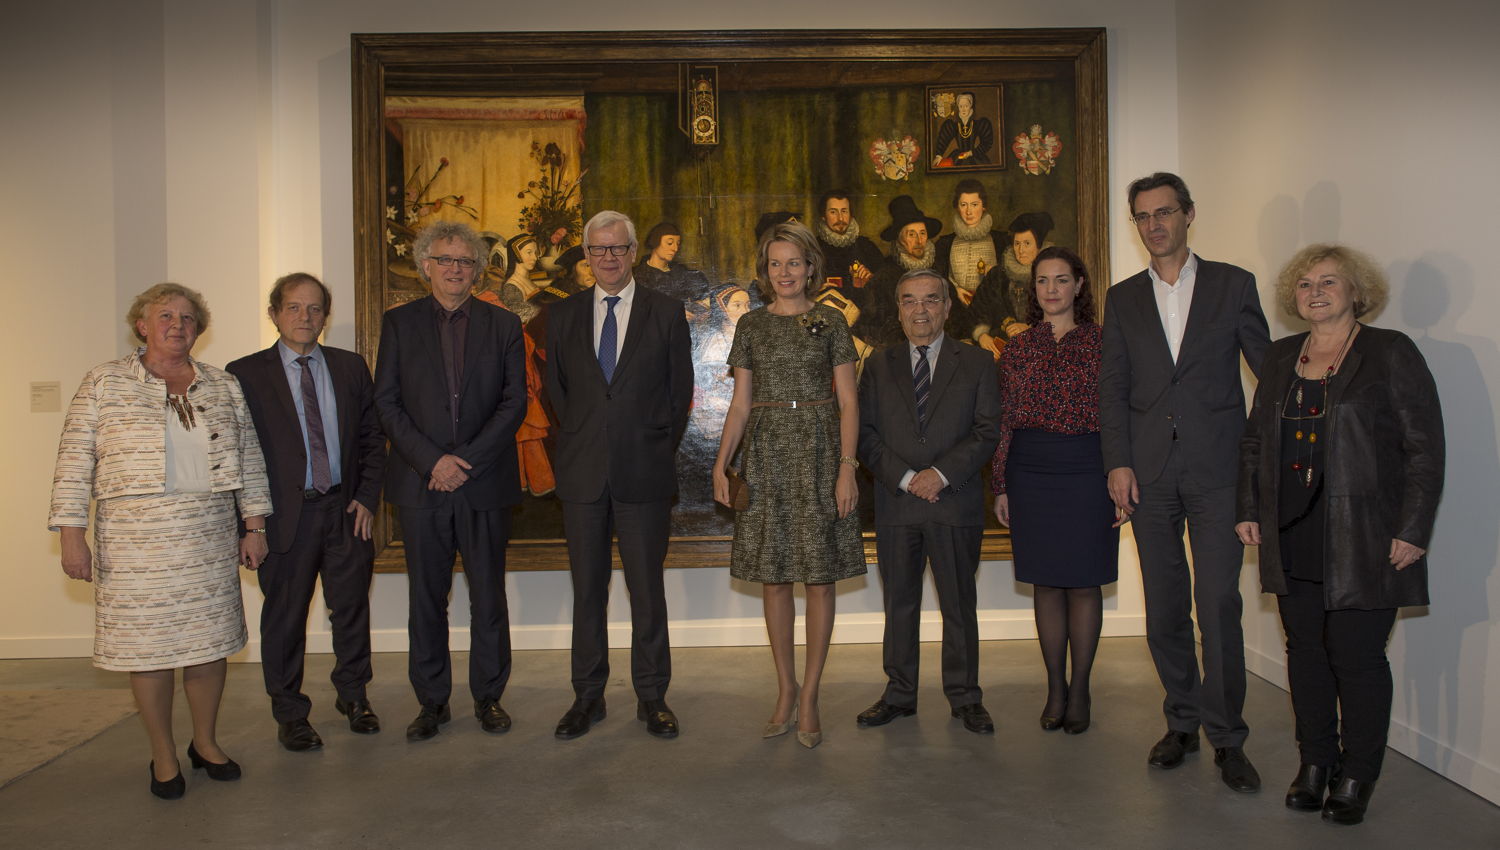 Koningin Mathilde bezoekt 'Op zoek naar Utopia' in M-Museum Leuven
(c) Rudi Van Beek